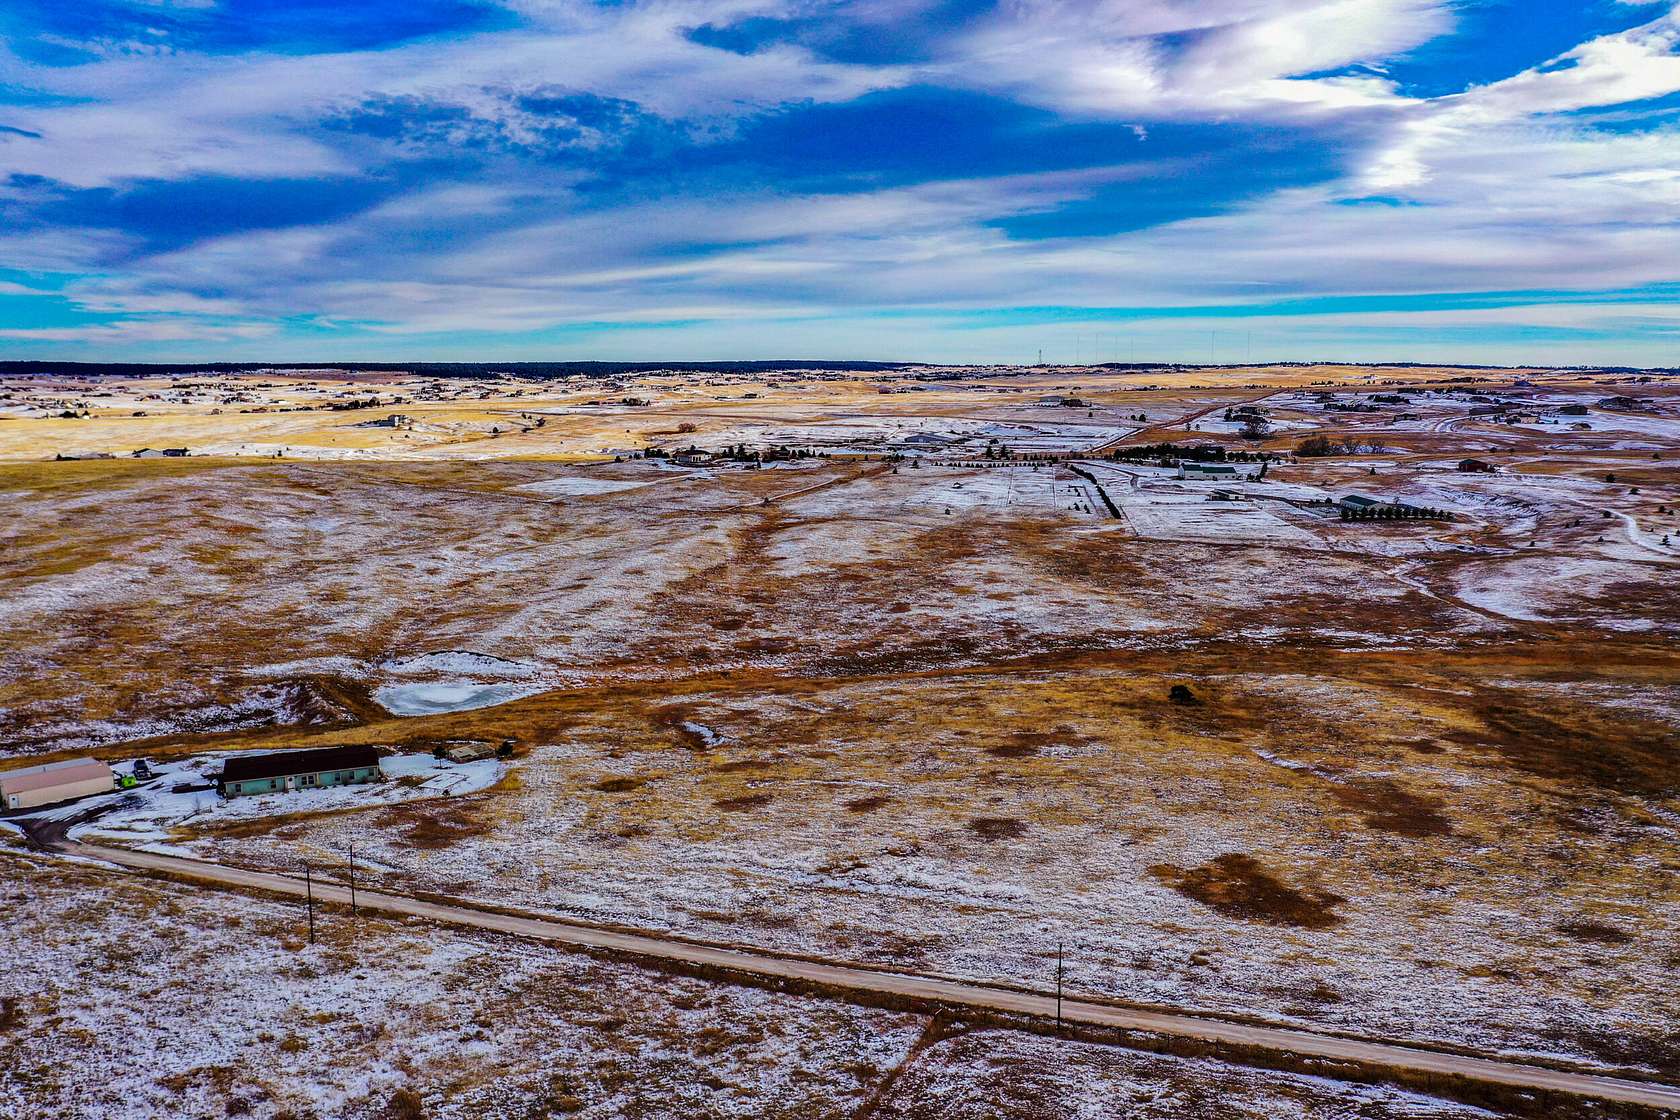 10 Acres of Land for Sale in Colorado Springs, Colorado